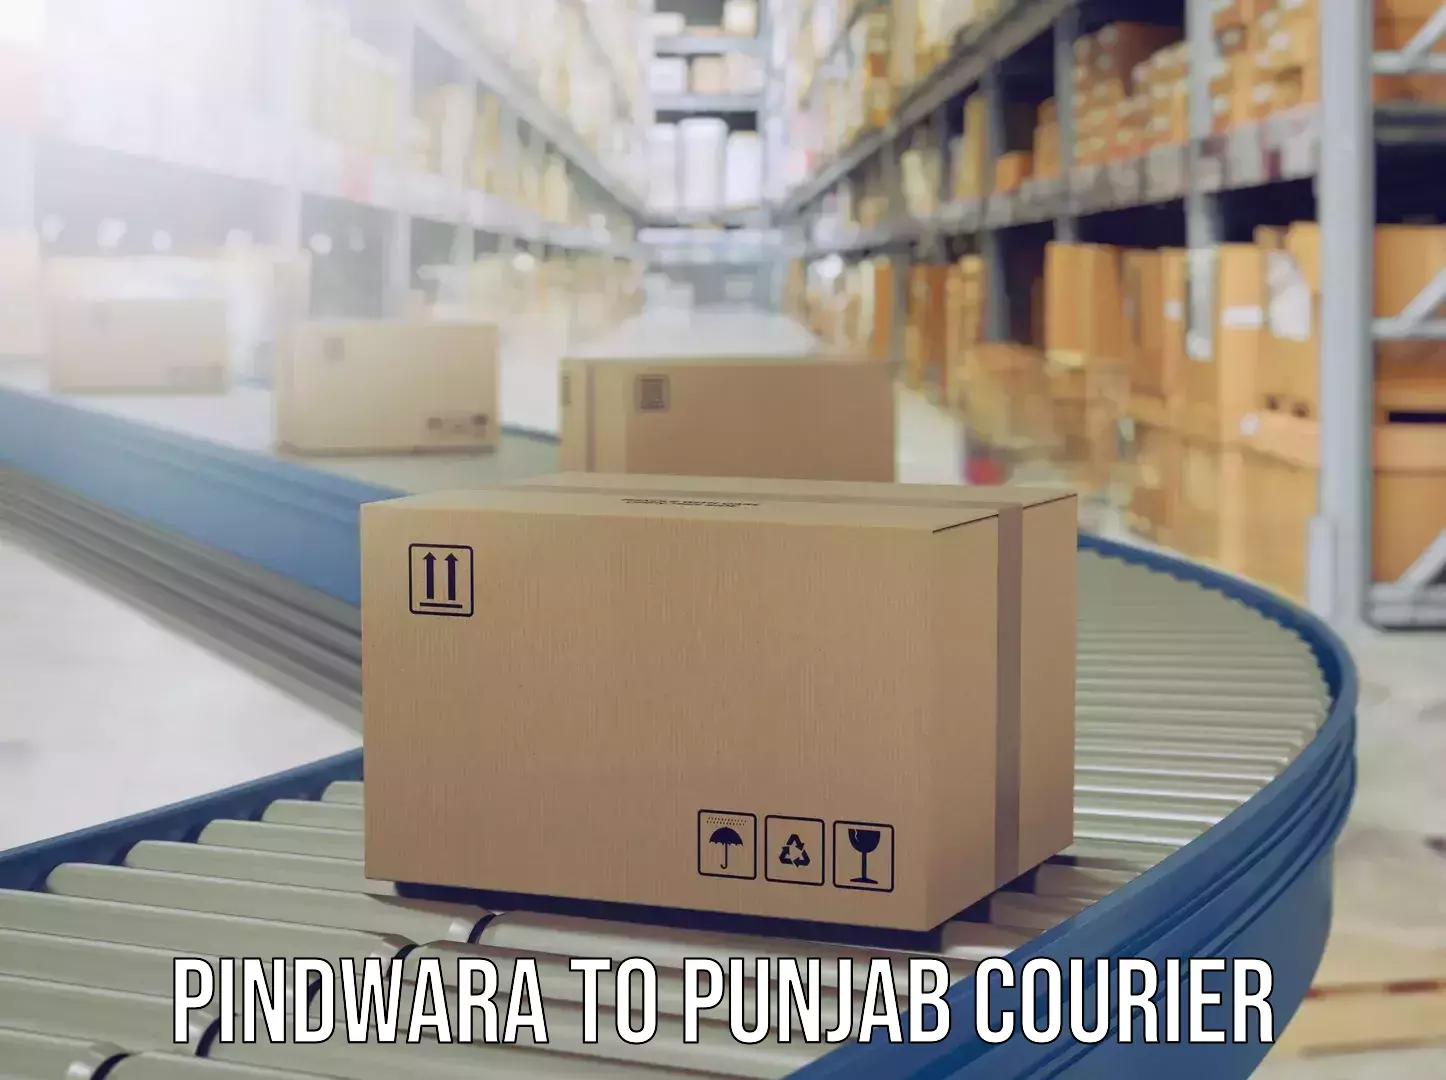 Luggage dispatch service Pindwara to Ajnala